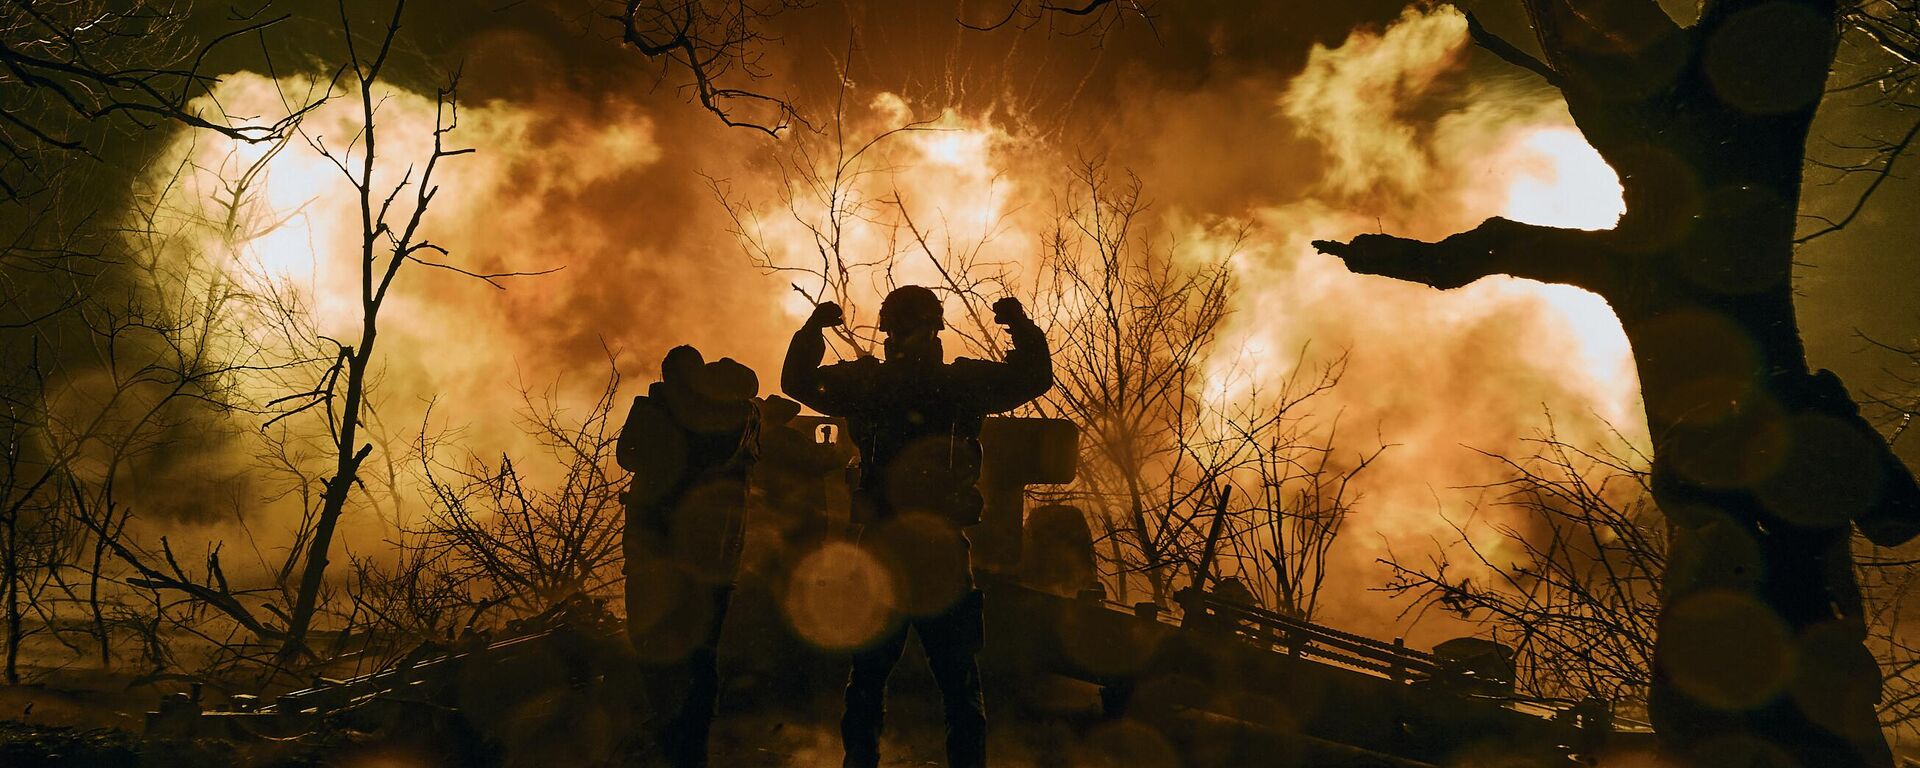  جنود أوكرانيون يطلقون نيران المدفعية على مواقع روسية بالقرب من باخموت في منطقة دونيتسك، 20 نوفمبر 2022.  - سبوتنيك عربي, 1920, 08.06.2023